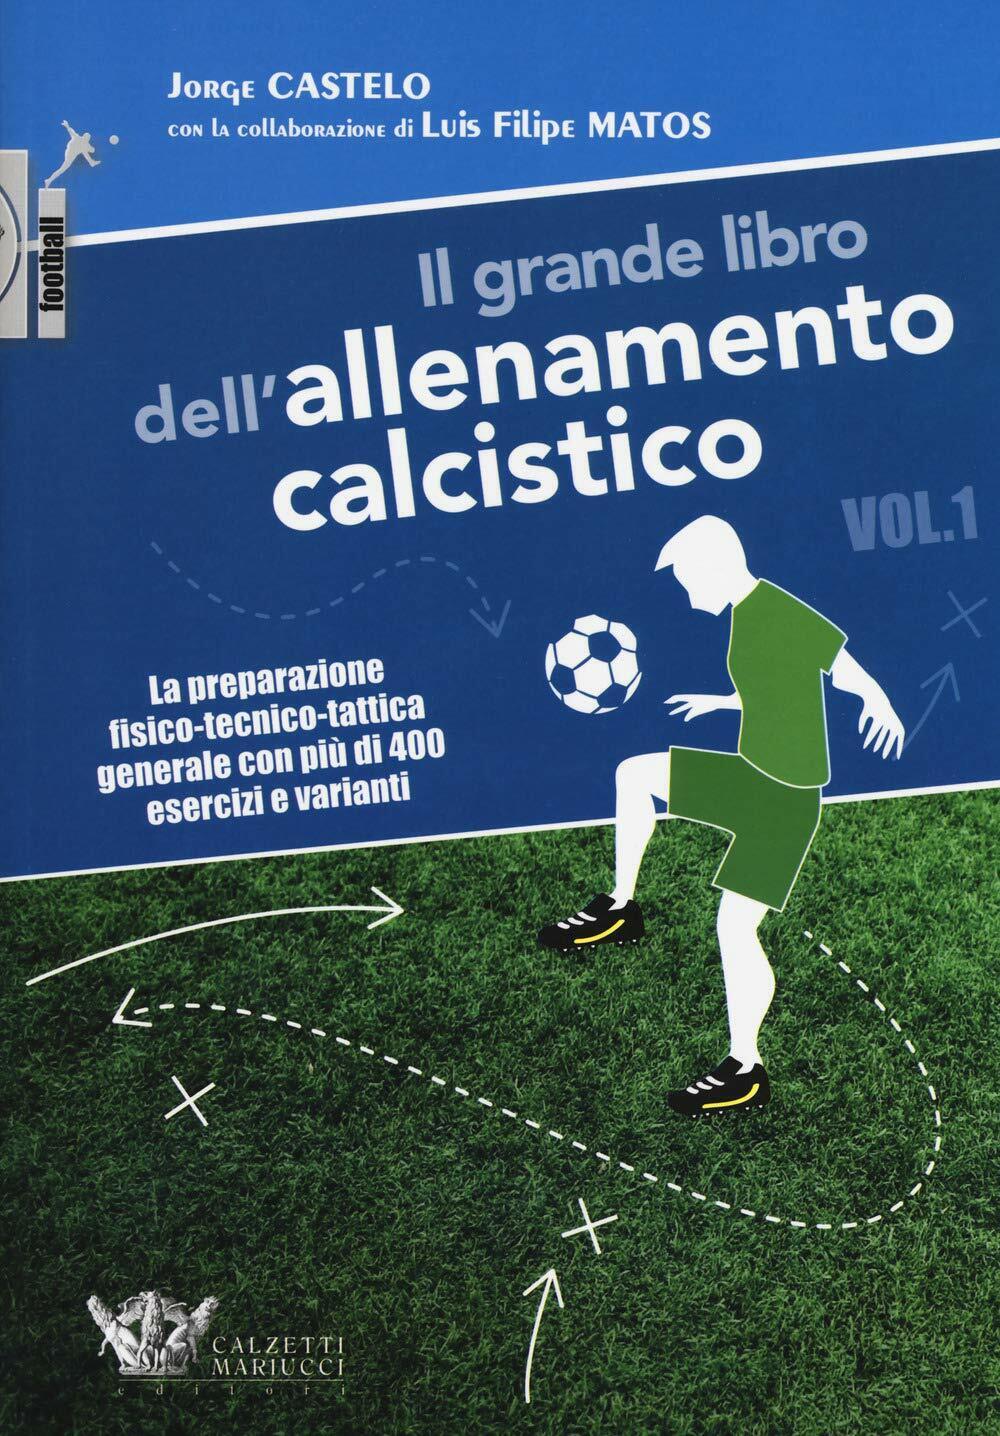 Il grande libro dell'allenamento calcistico. Vol.1 - Jorge Castelo, Matos